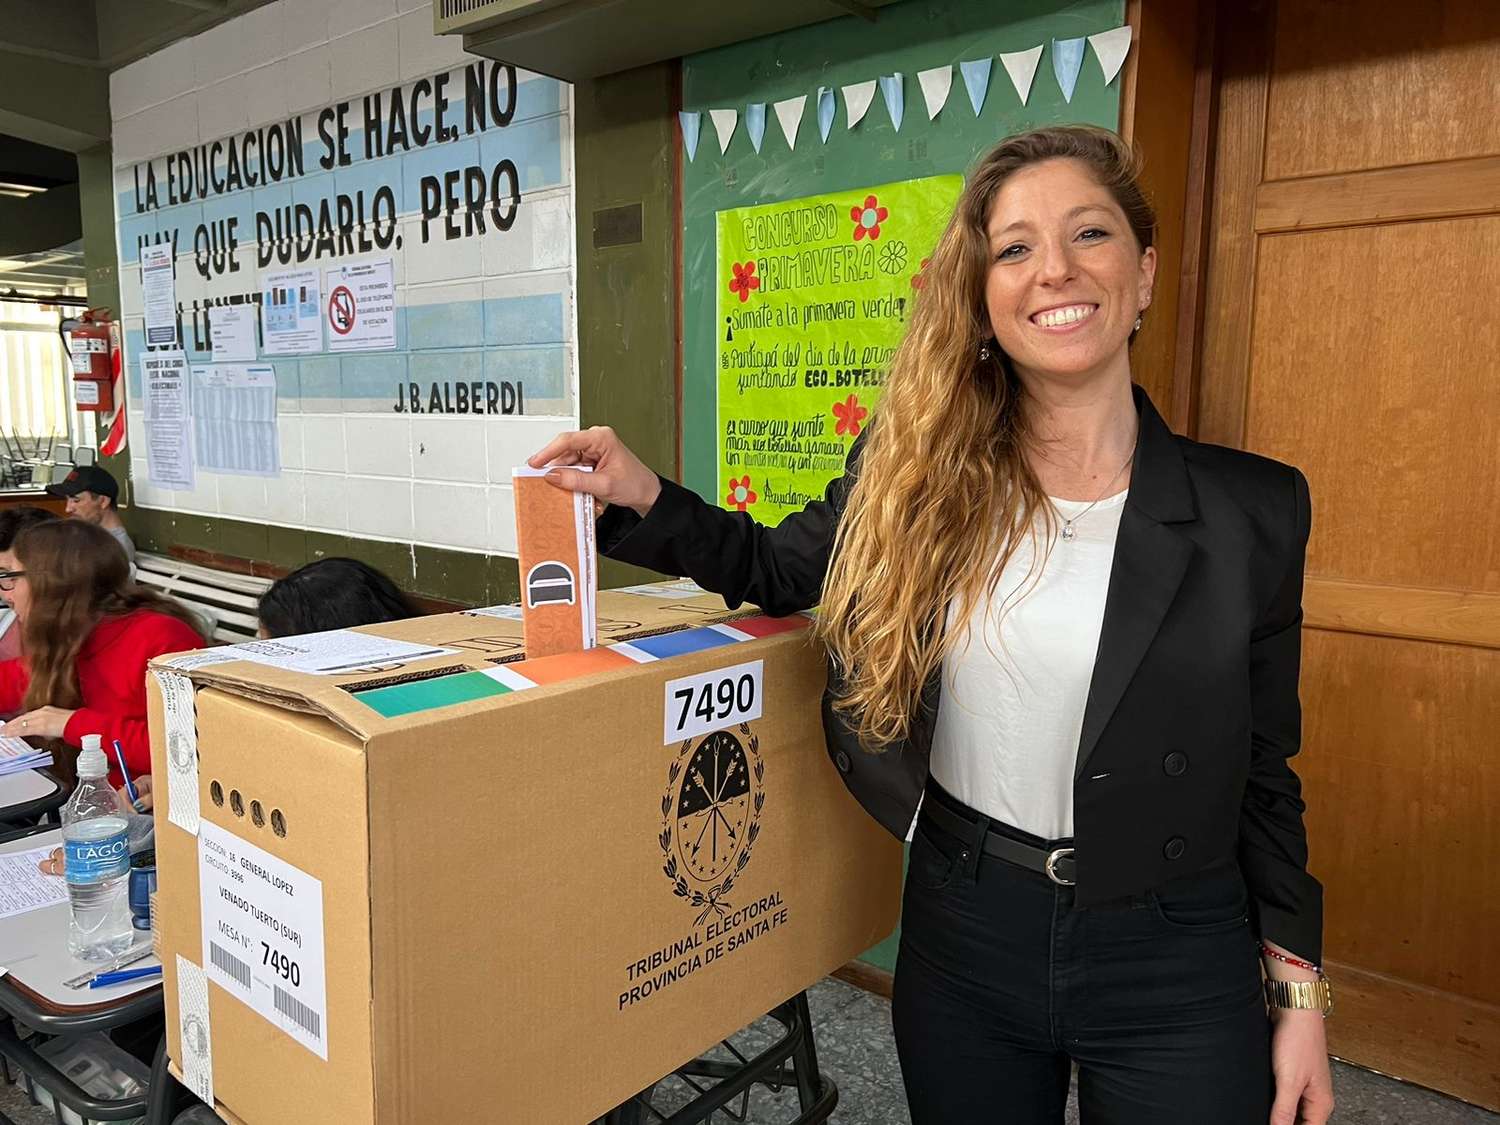 Sofía Galnares emitió su voto y expresó su confianza por todo lo trabajado.